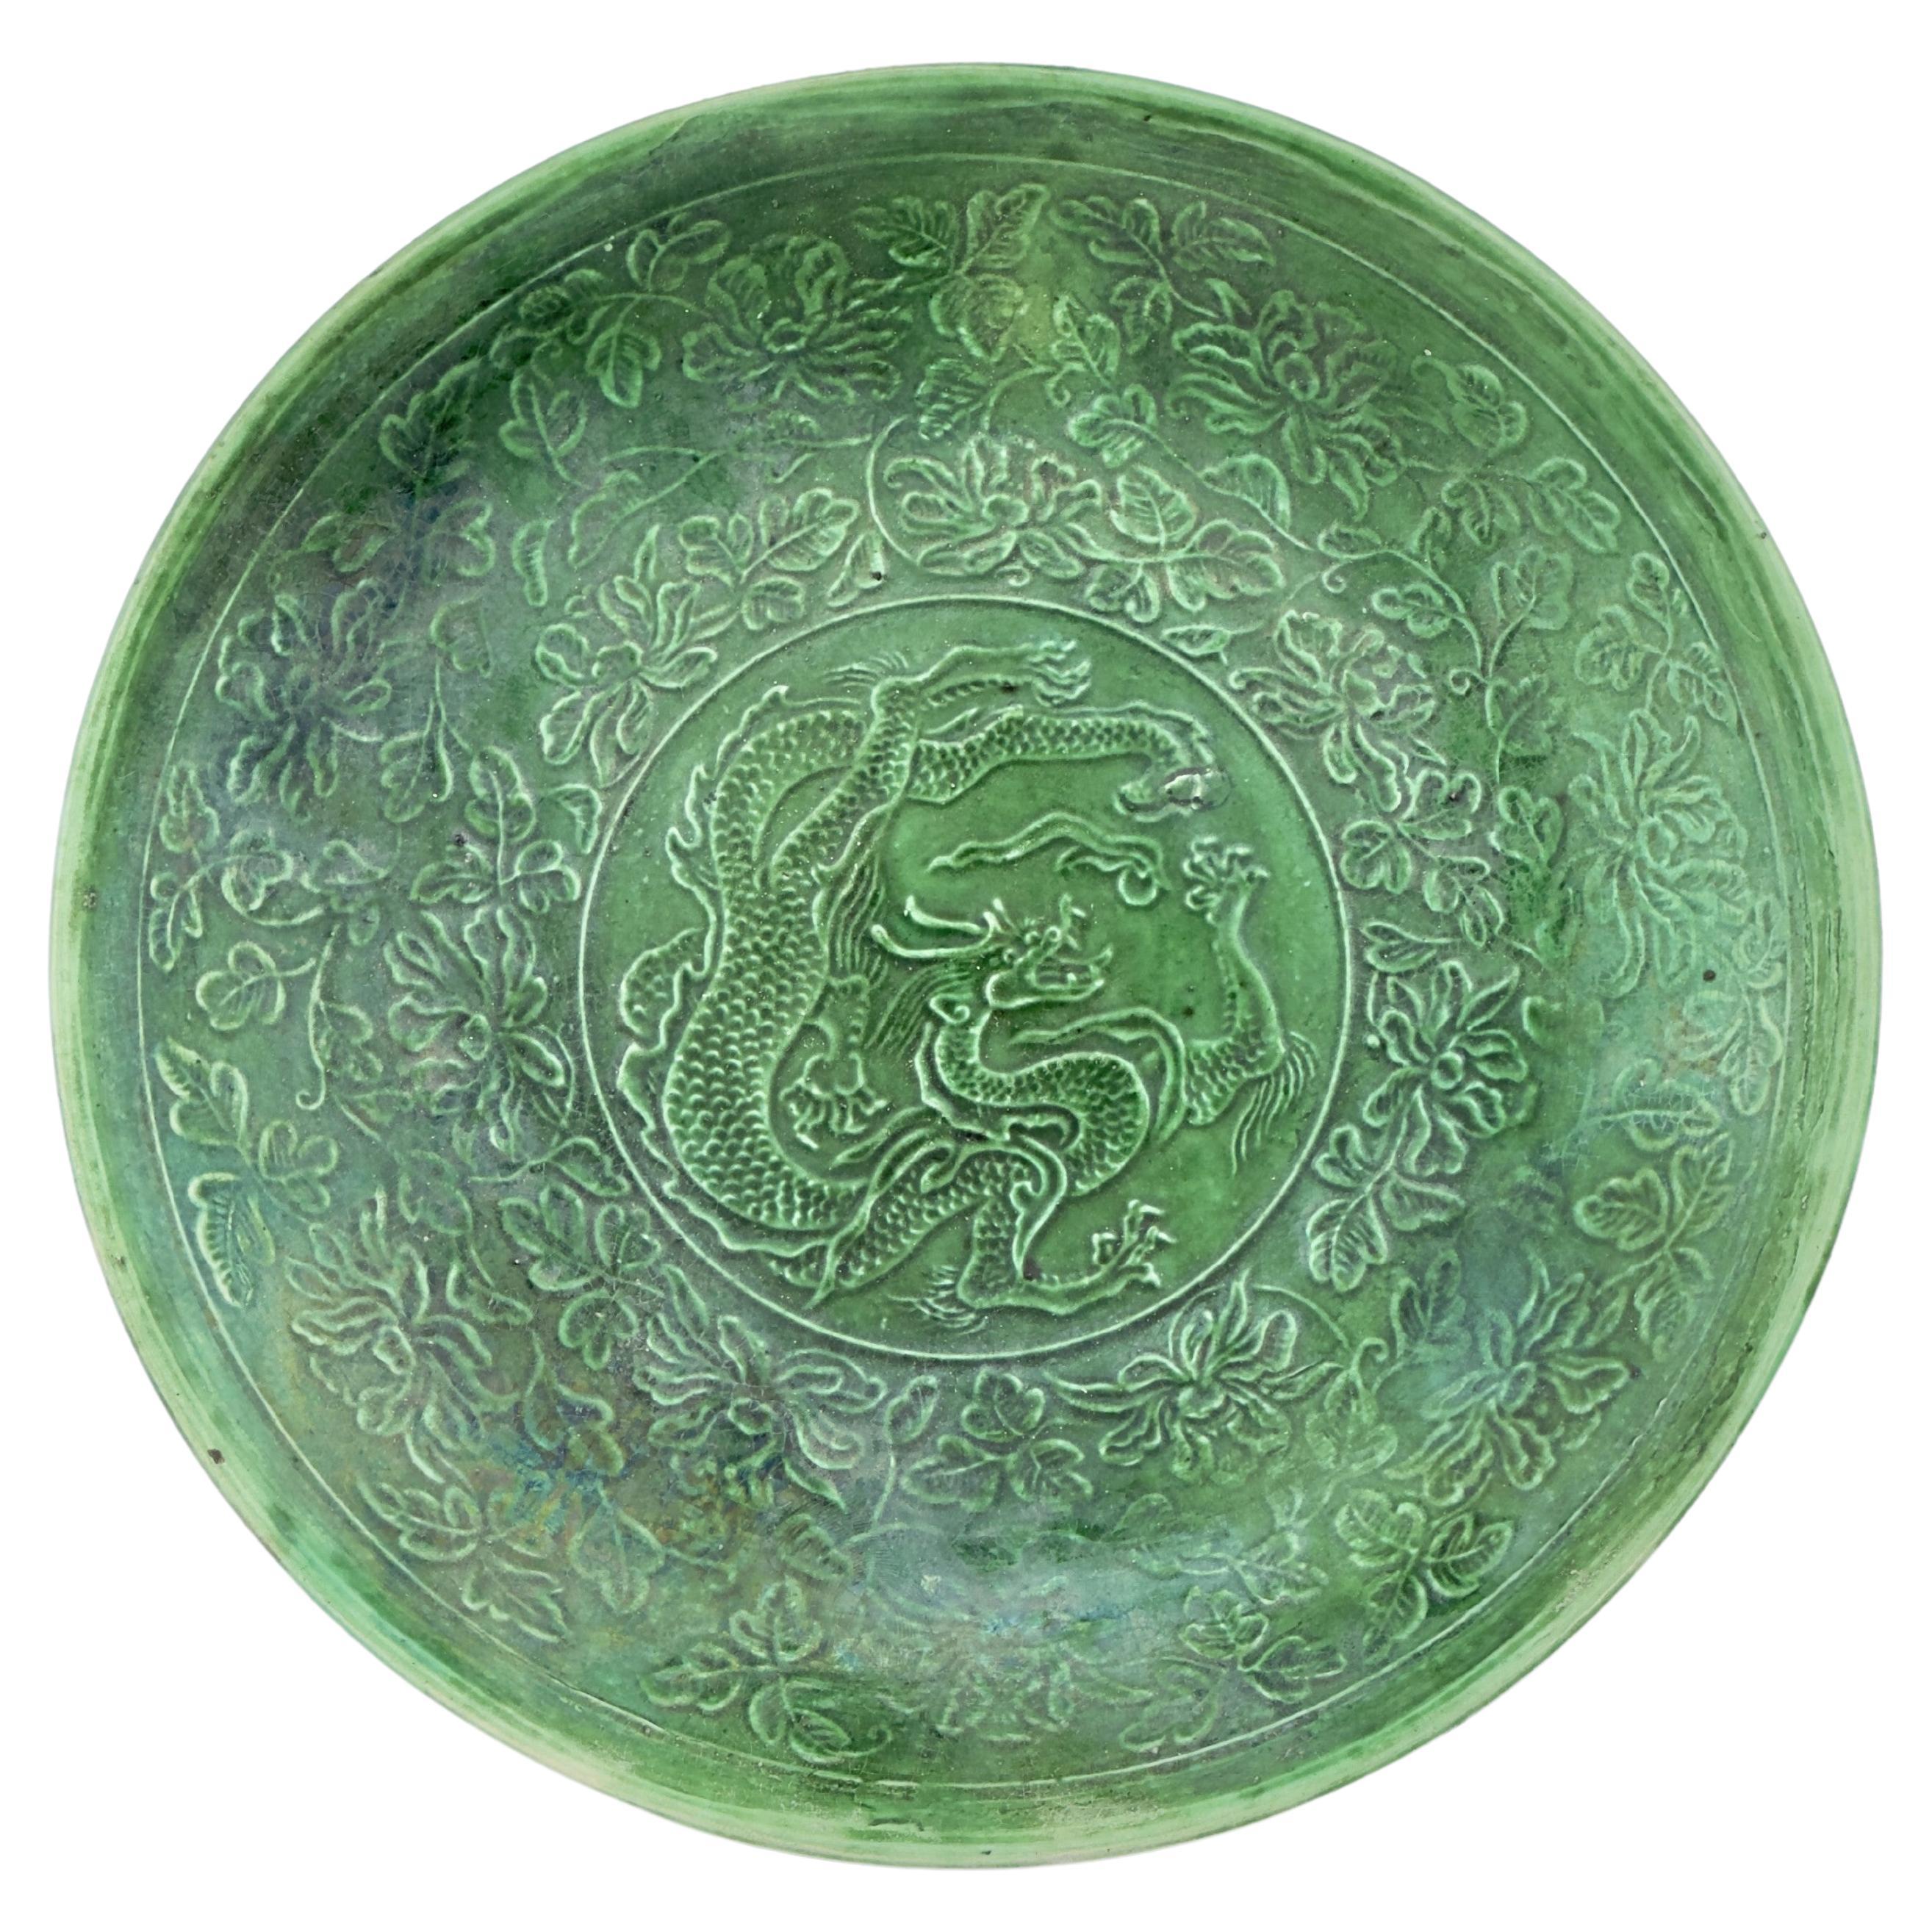 Seltene grün glasierte Drachenschüssel aus Dingyao, Nördliche Song Dynasty